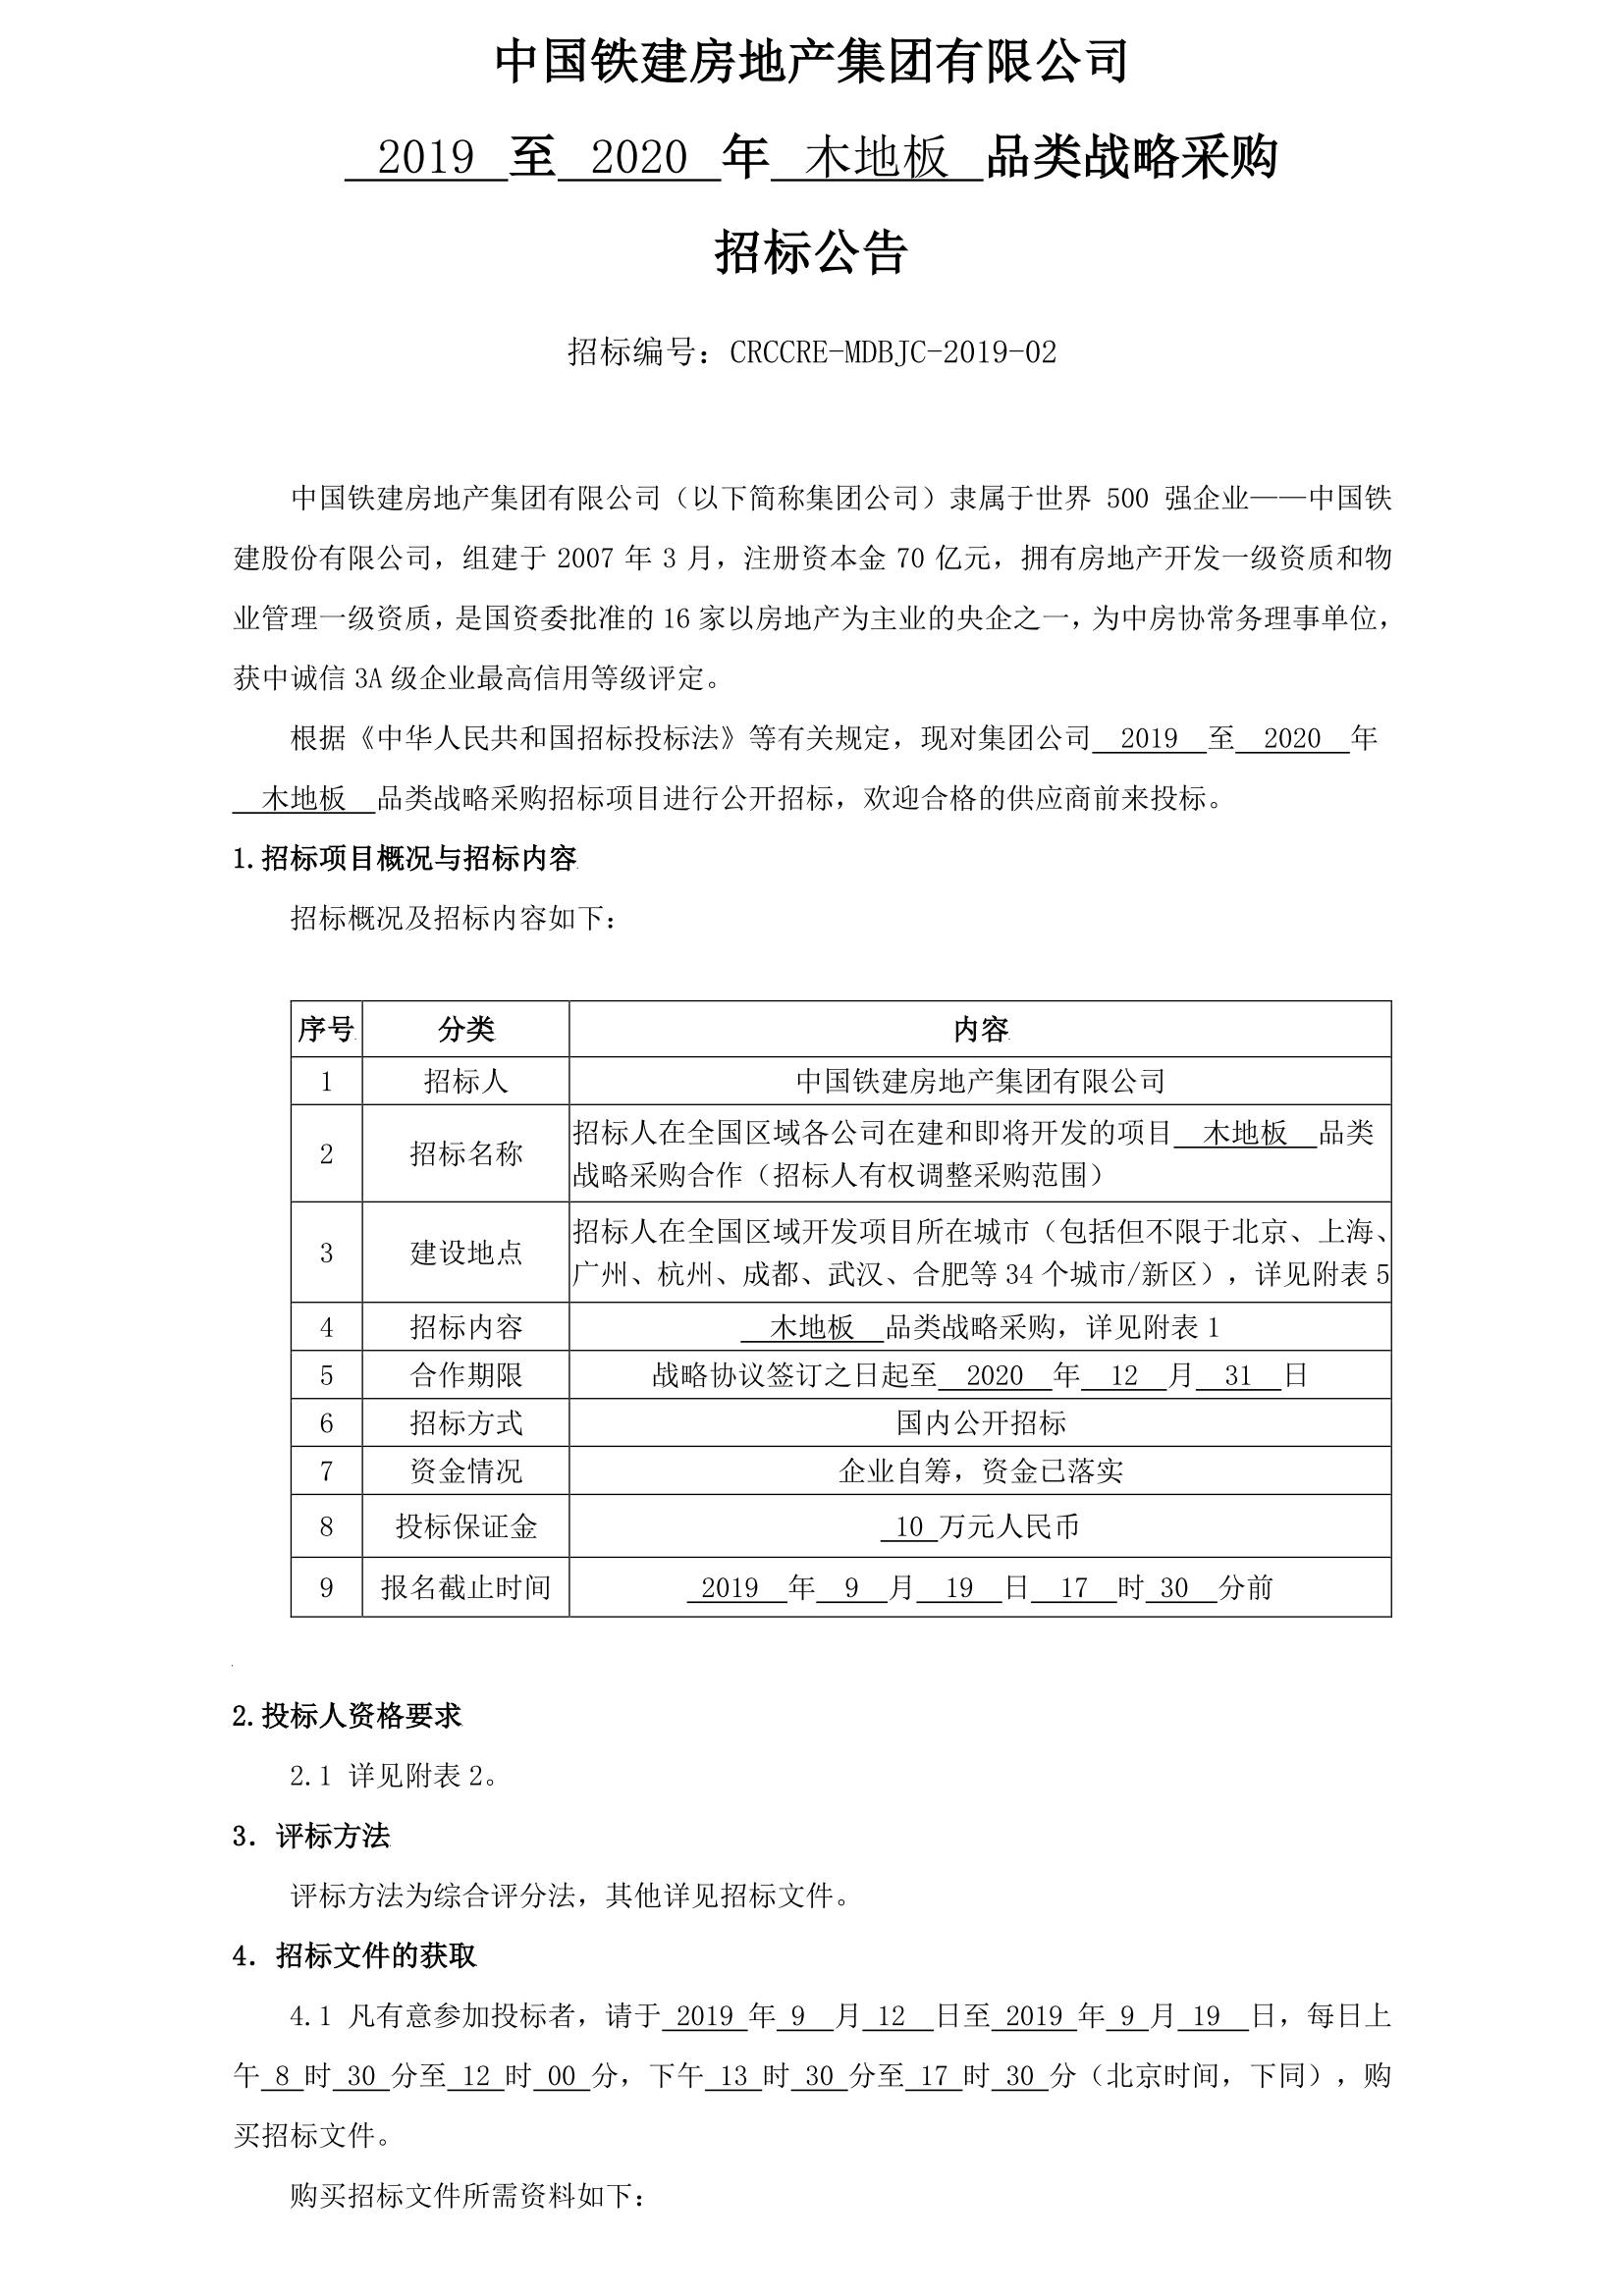 中国铁建房地产集团有限公司2019 至 2020 年木地板品类战略采购招标公告_01.jpg